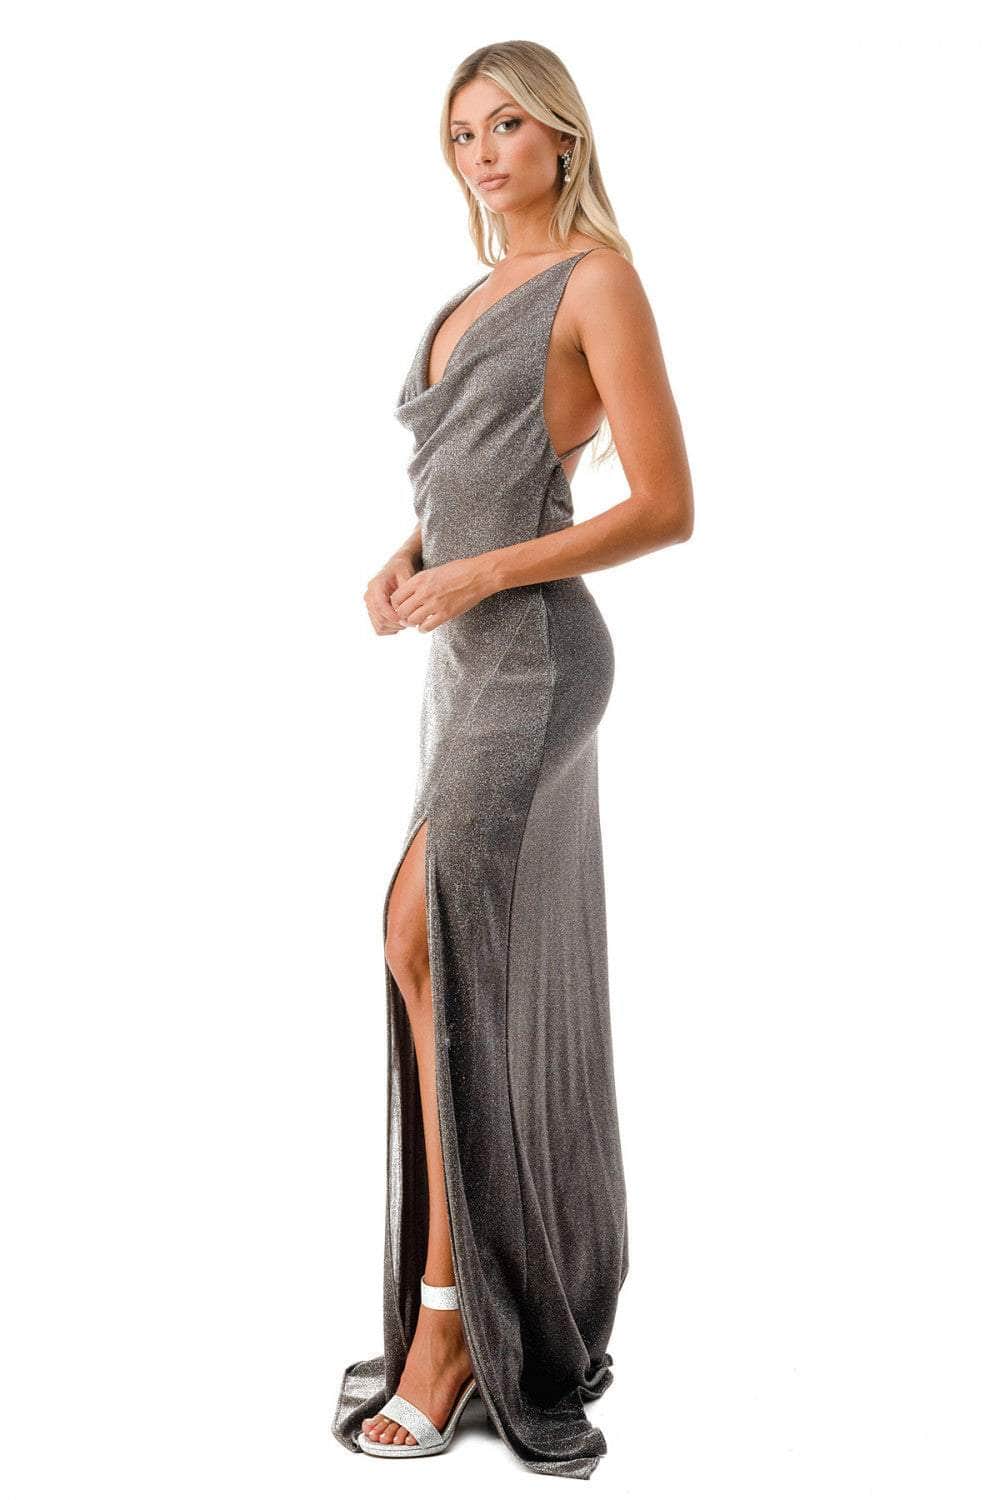 Aspeed Design D609 - Metallic Glitter Evening Gown